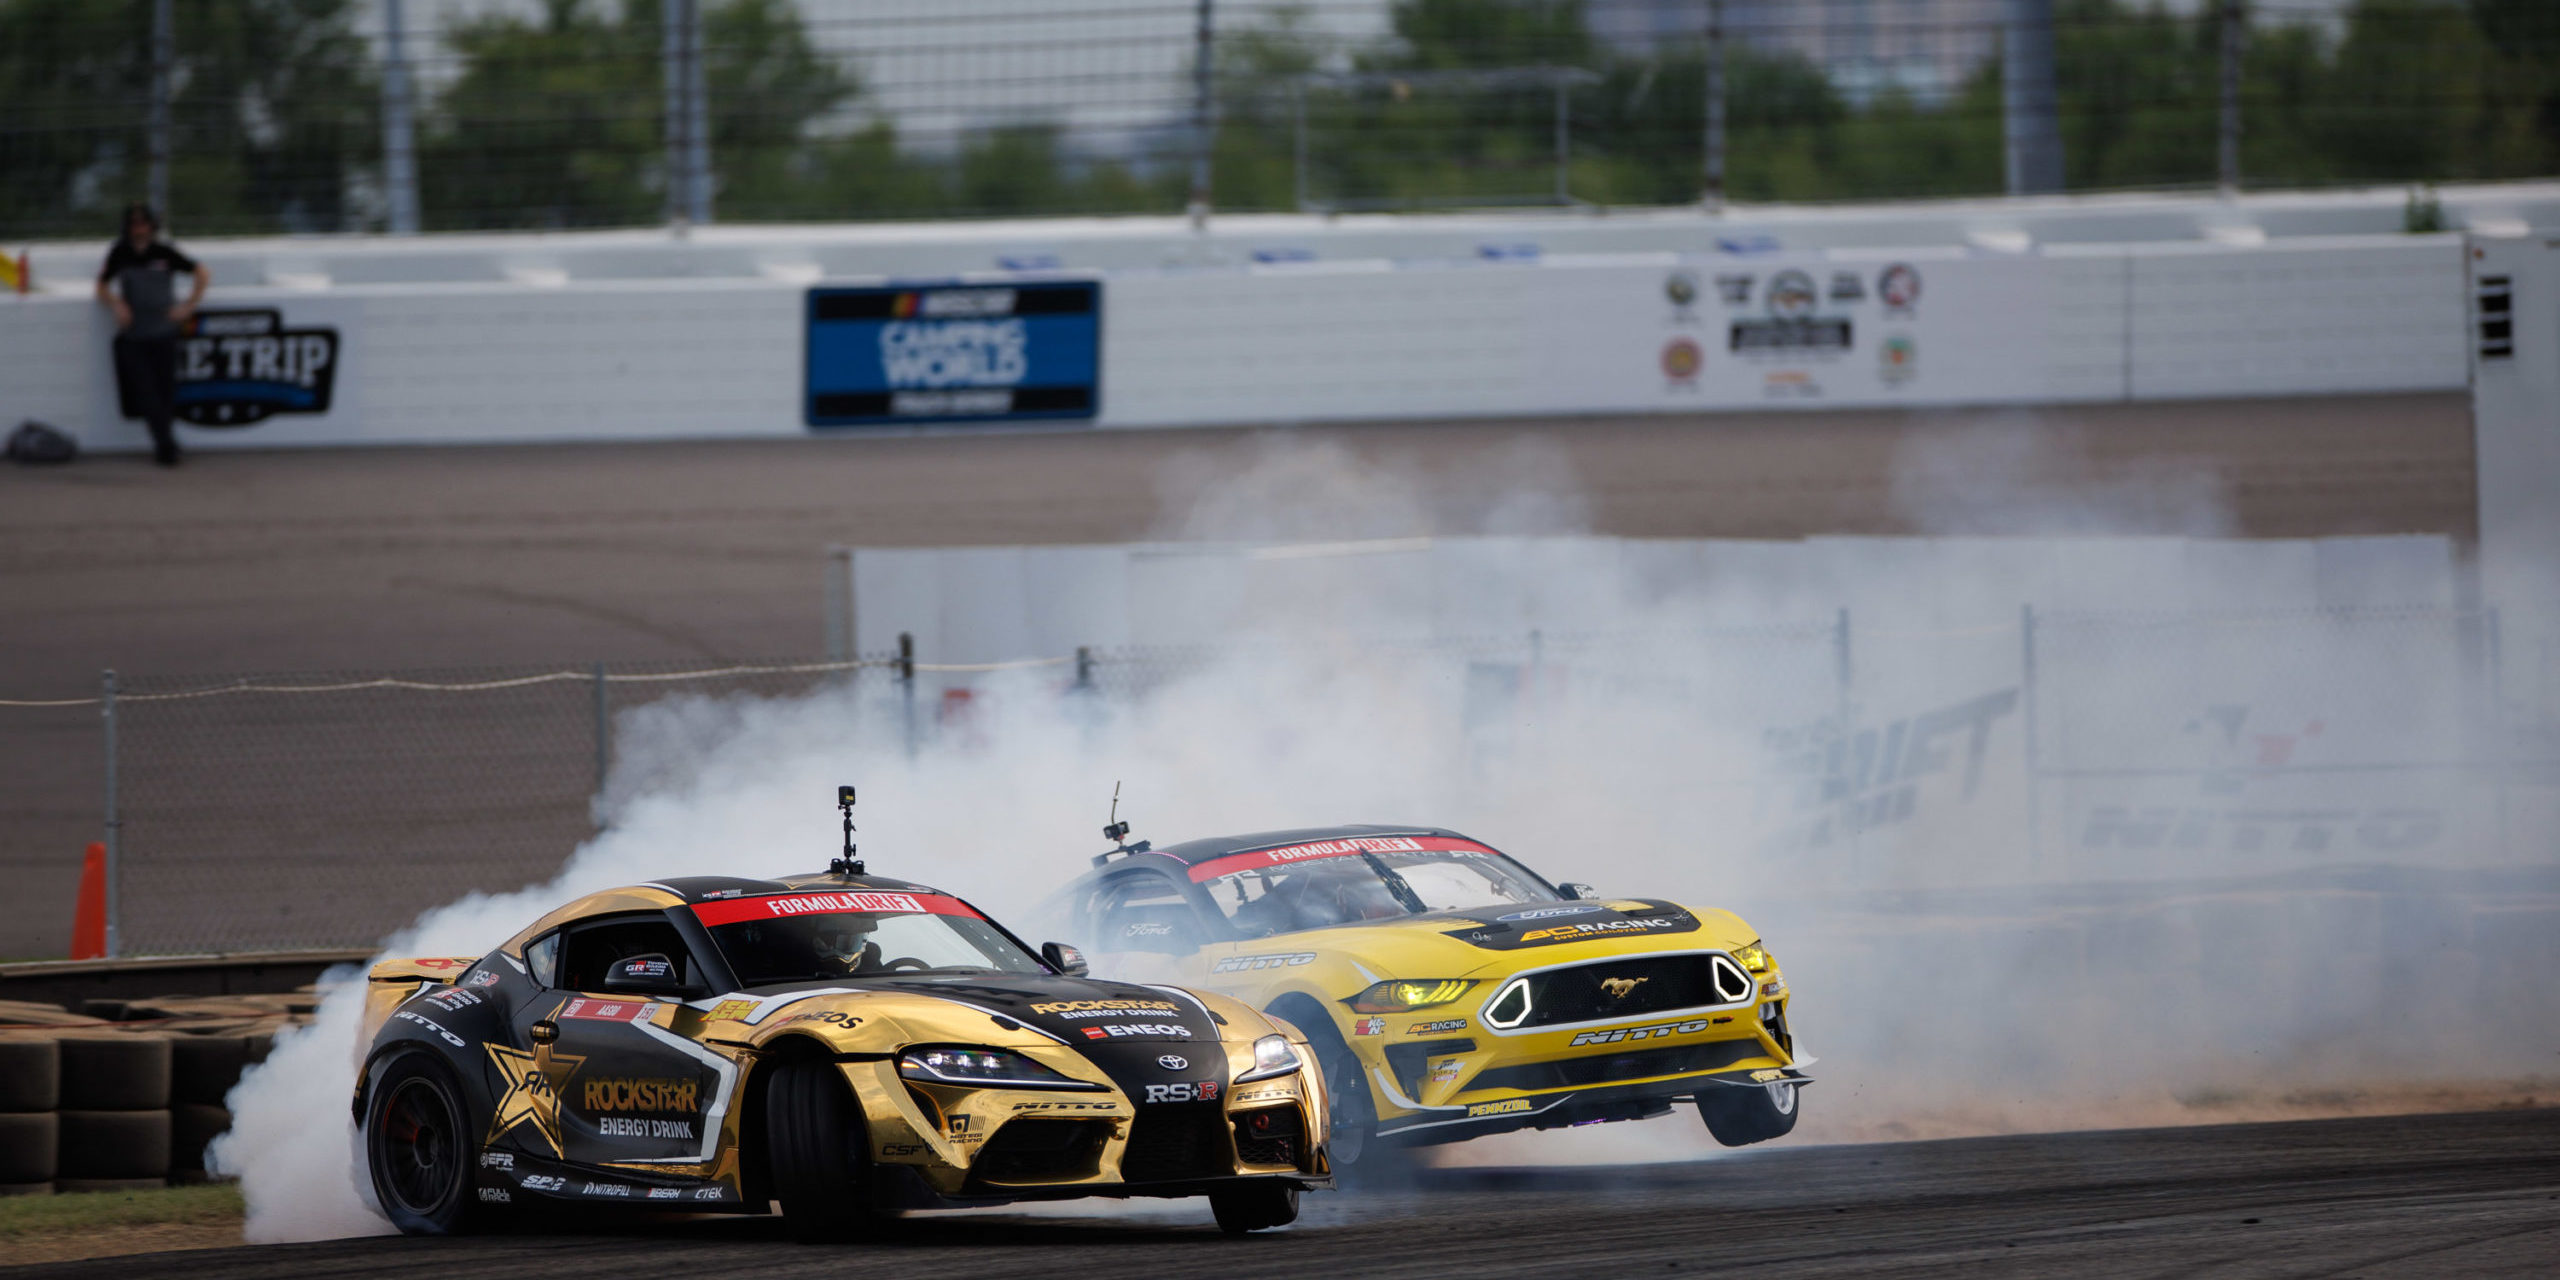 Two golden drift race cars turning